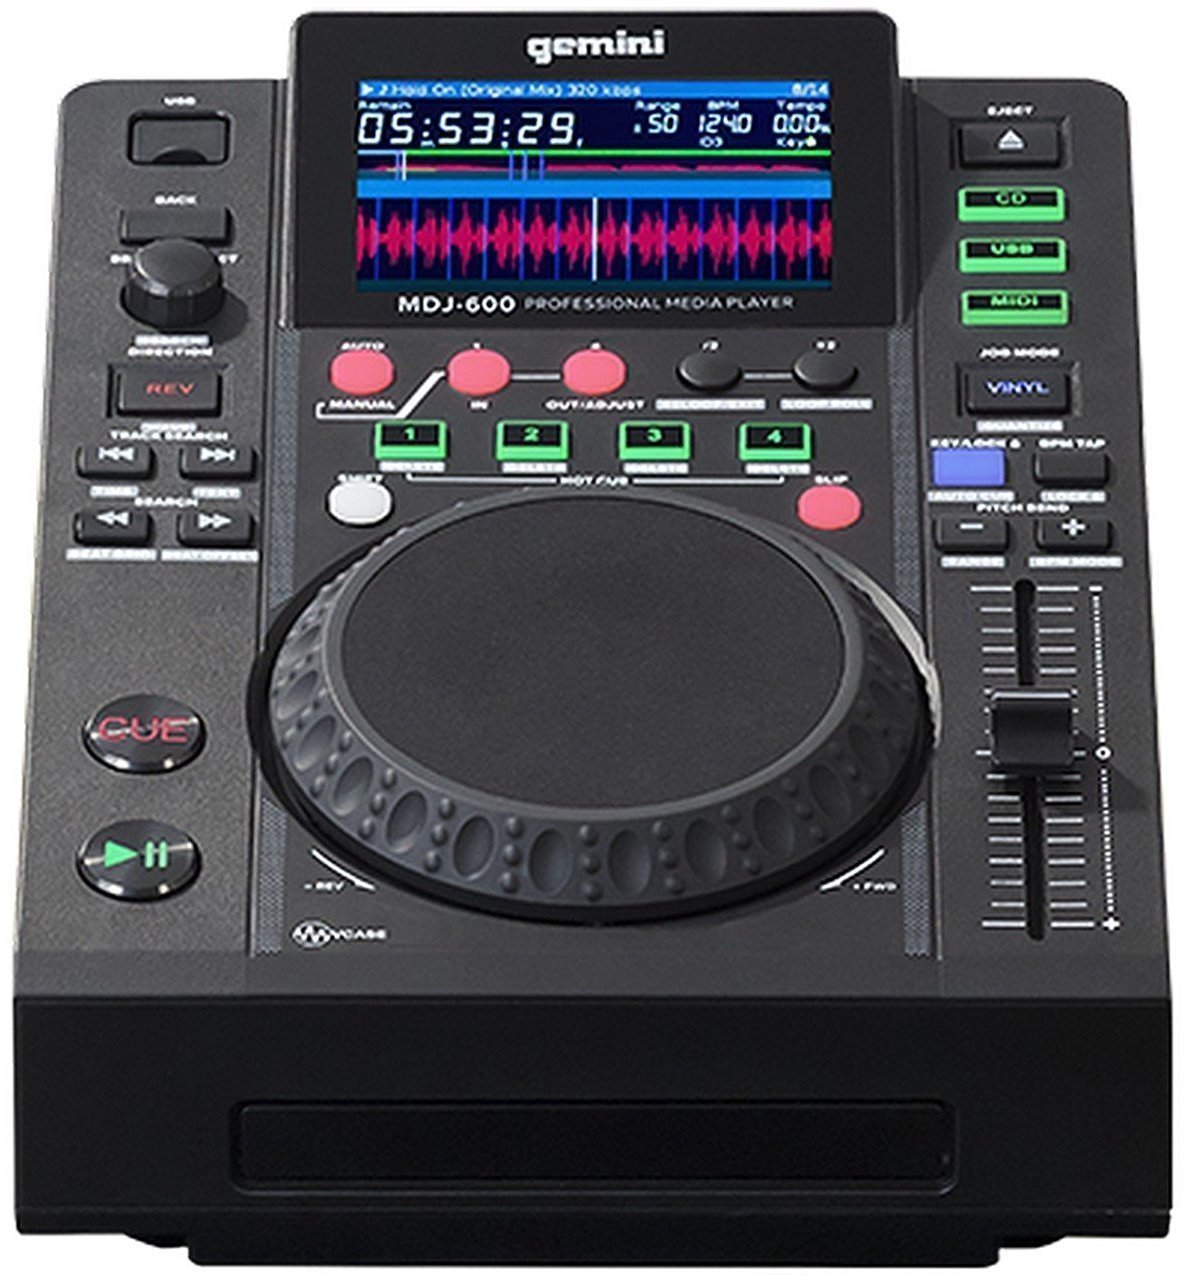 Επιτραπέζιος DJ Player Gemini MDJ-600